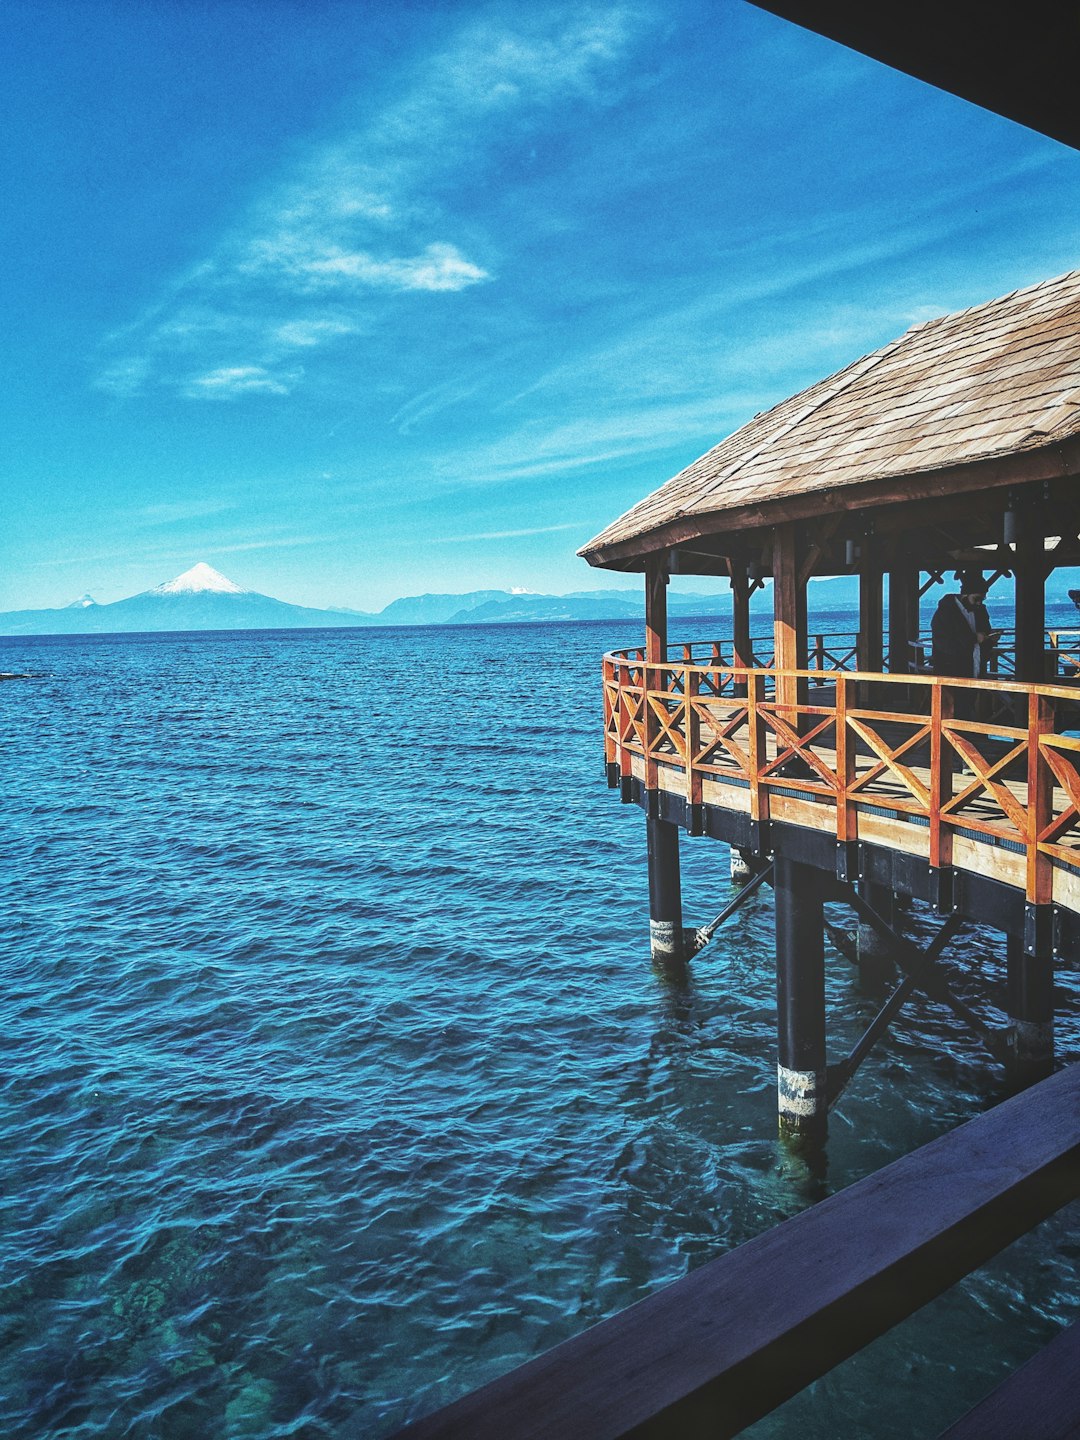 Resort photo spot Lago Llanquihue Puerto Varas